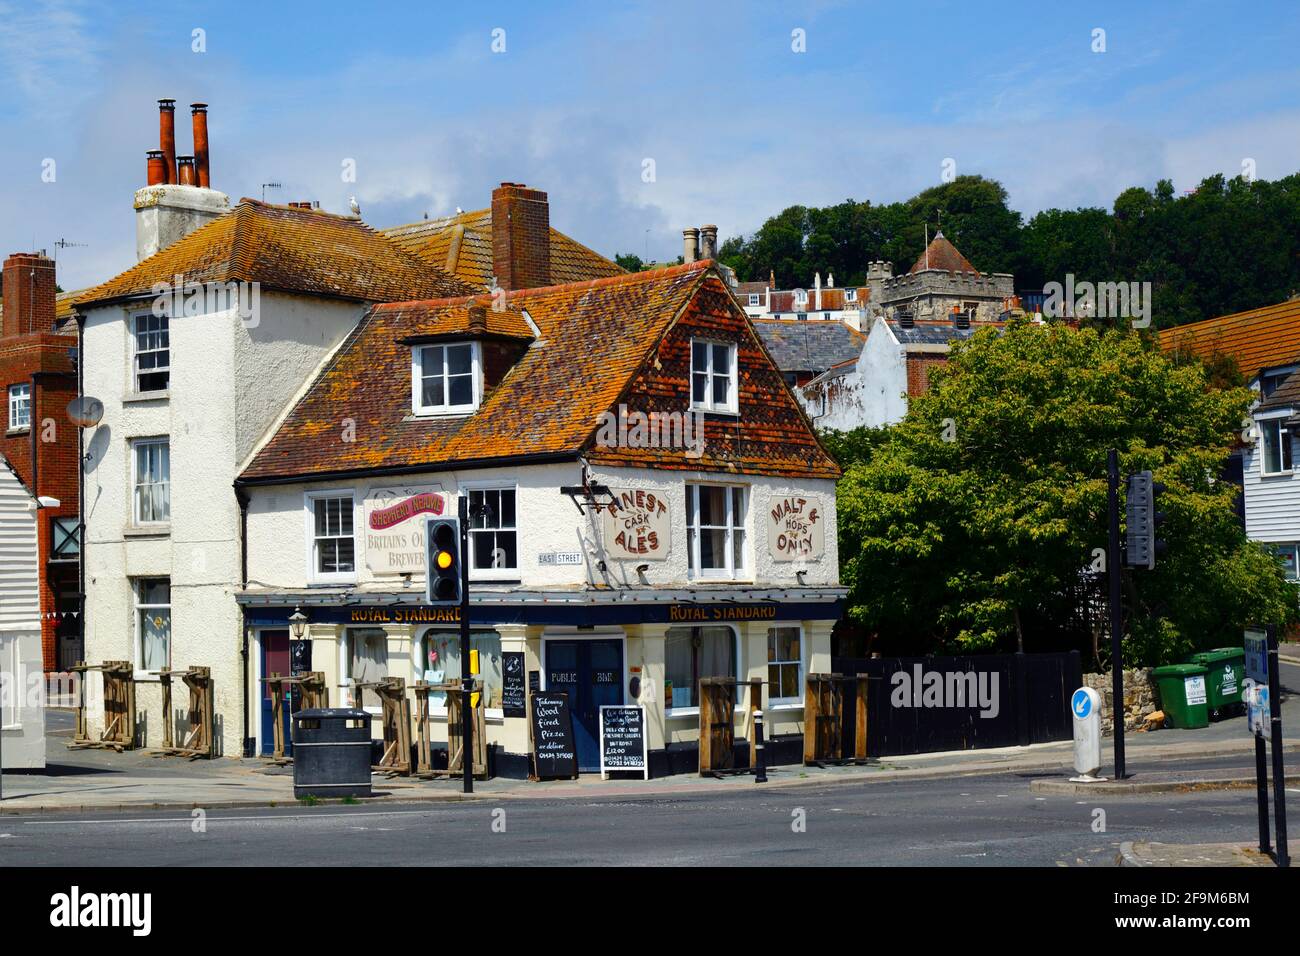 Il pub Royal Standard sulla strada principale A259 in fondo alla Bourne nella città vecchia, la torre della chiesa di St Clements in background, Hastings, East Sussex, Inghilterra Foto Stock